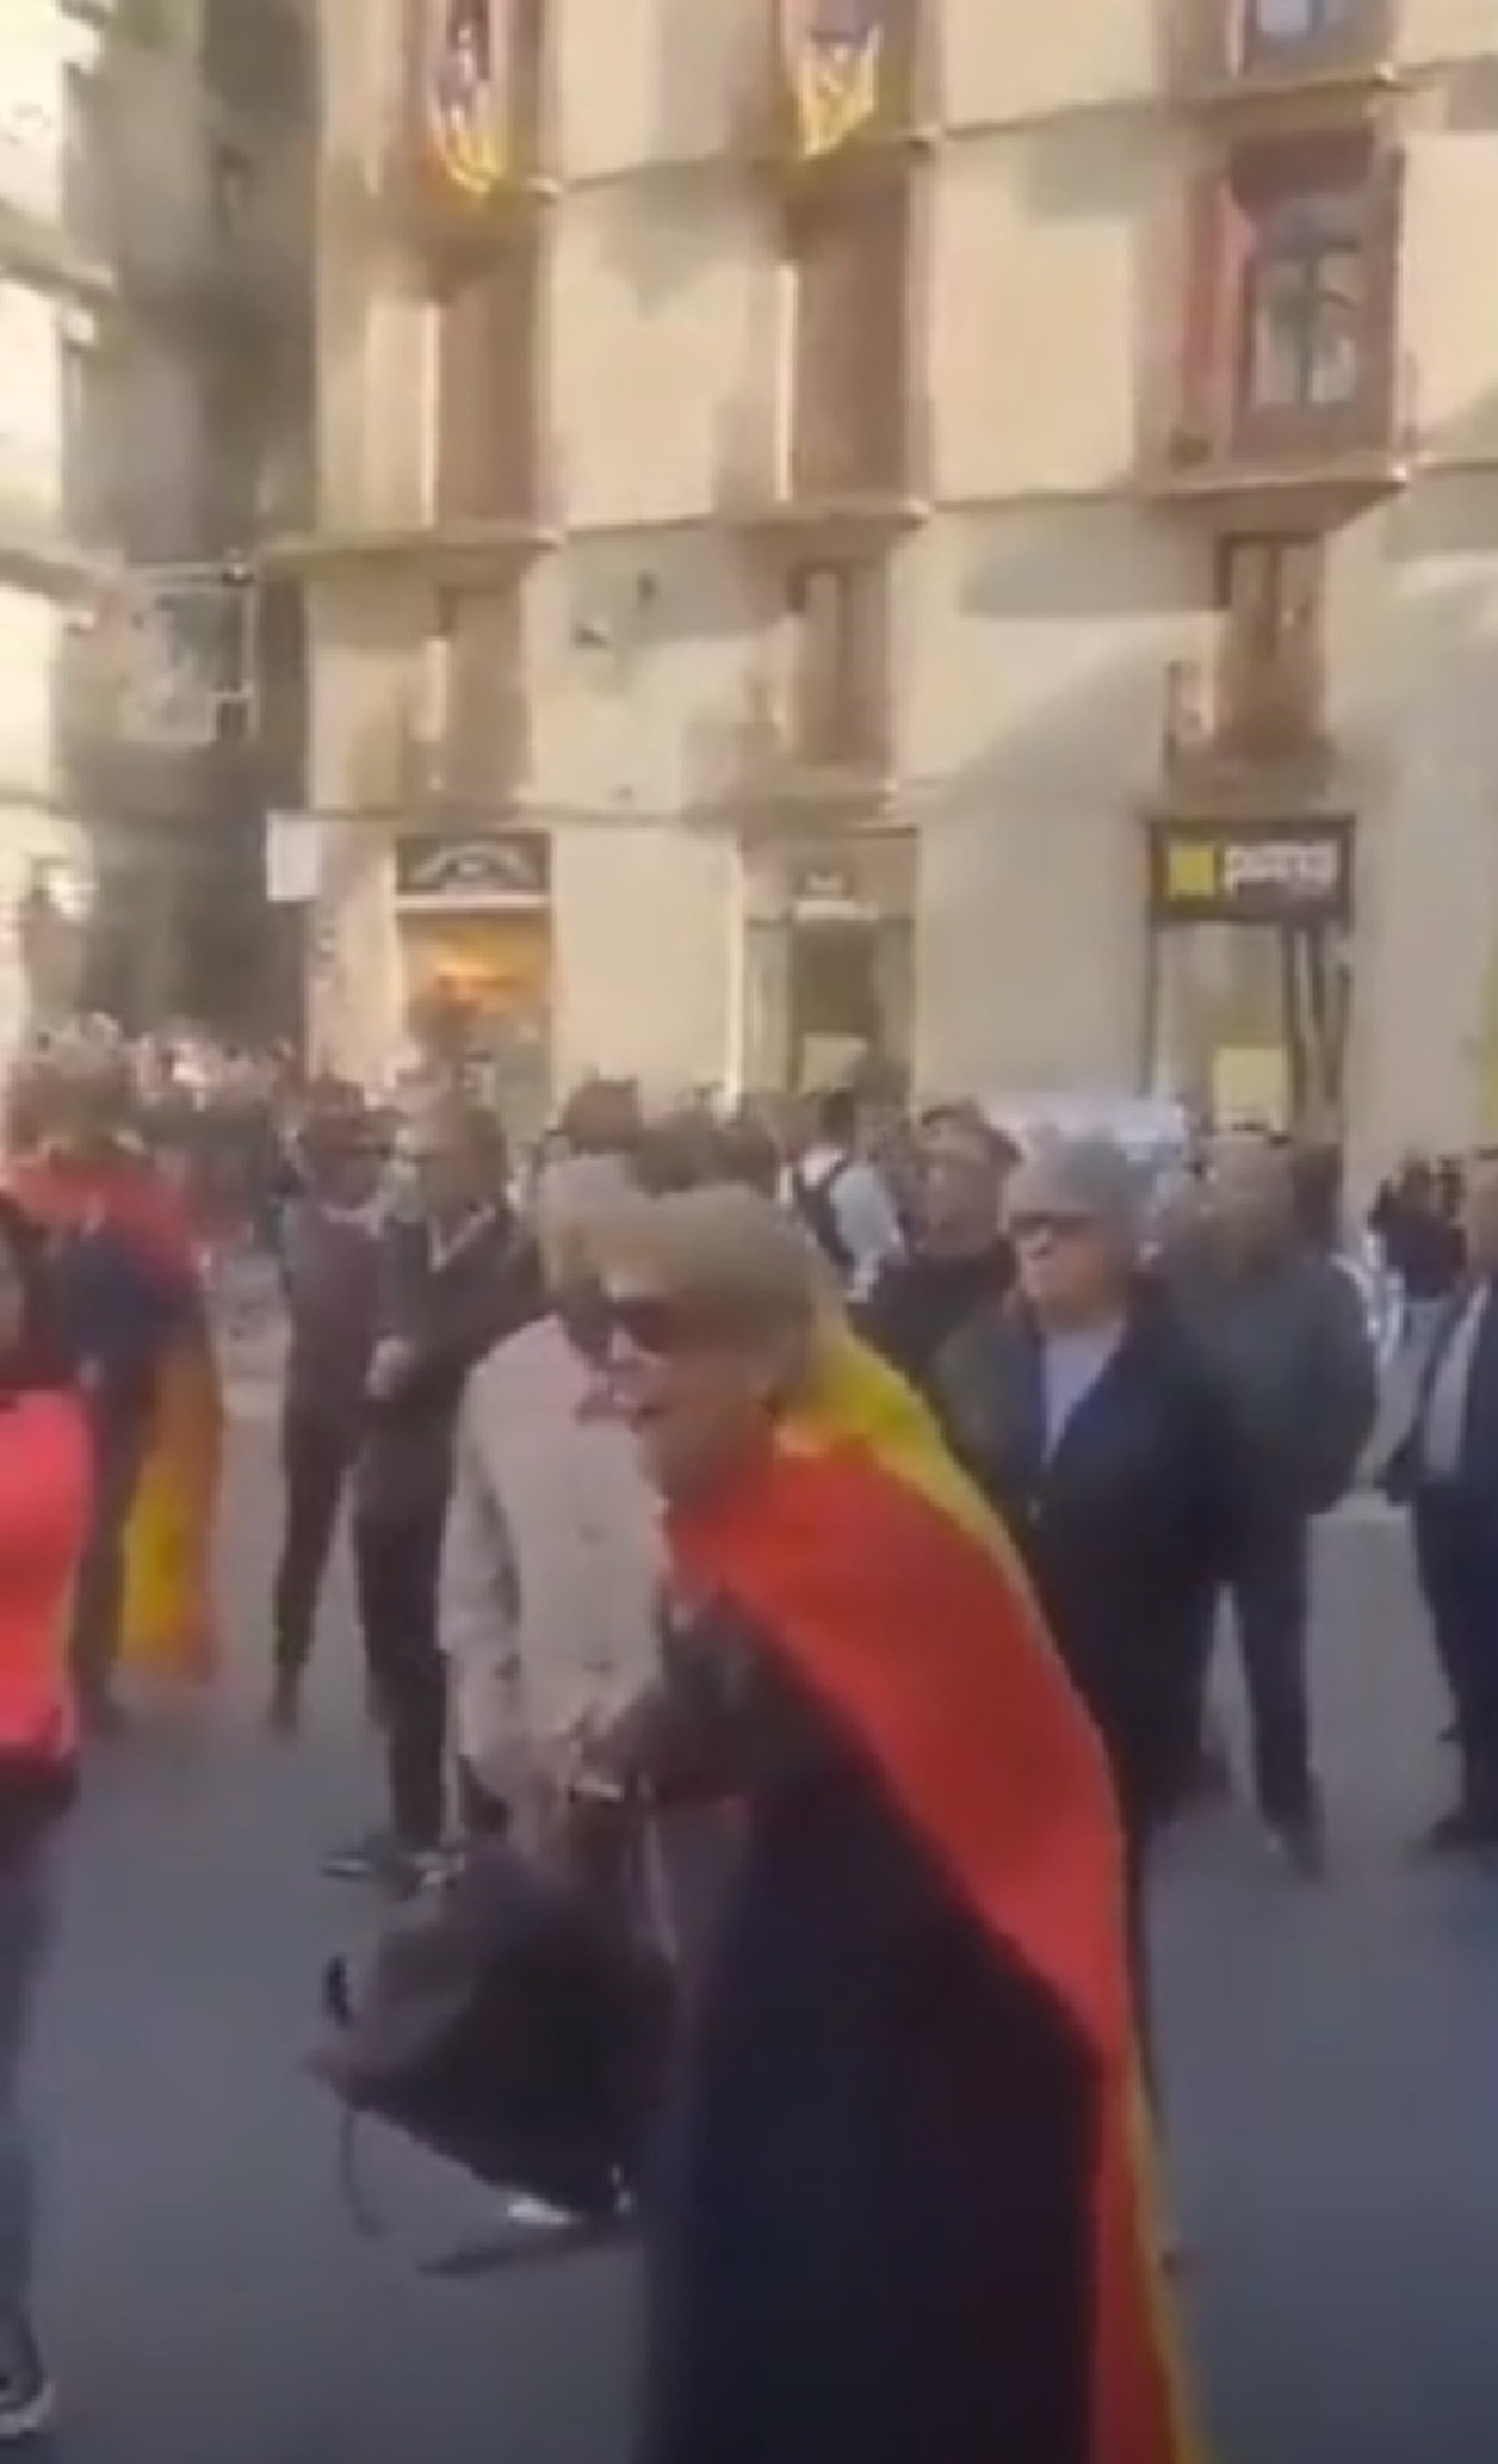 Sorprendente revelación en CatRàdio: quién es la señora que chilla como una loca con la bandera española